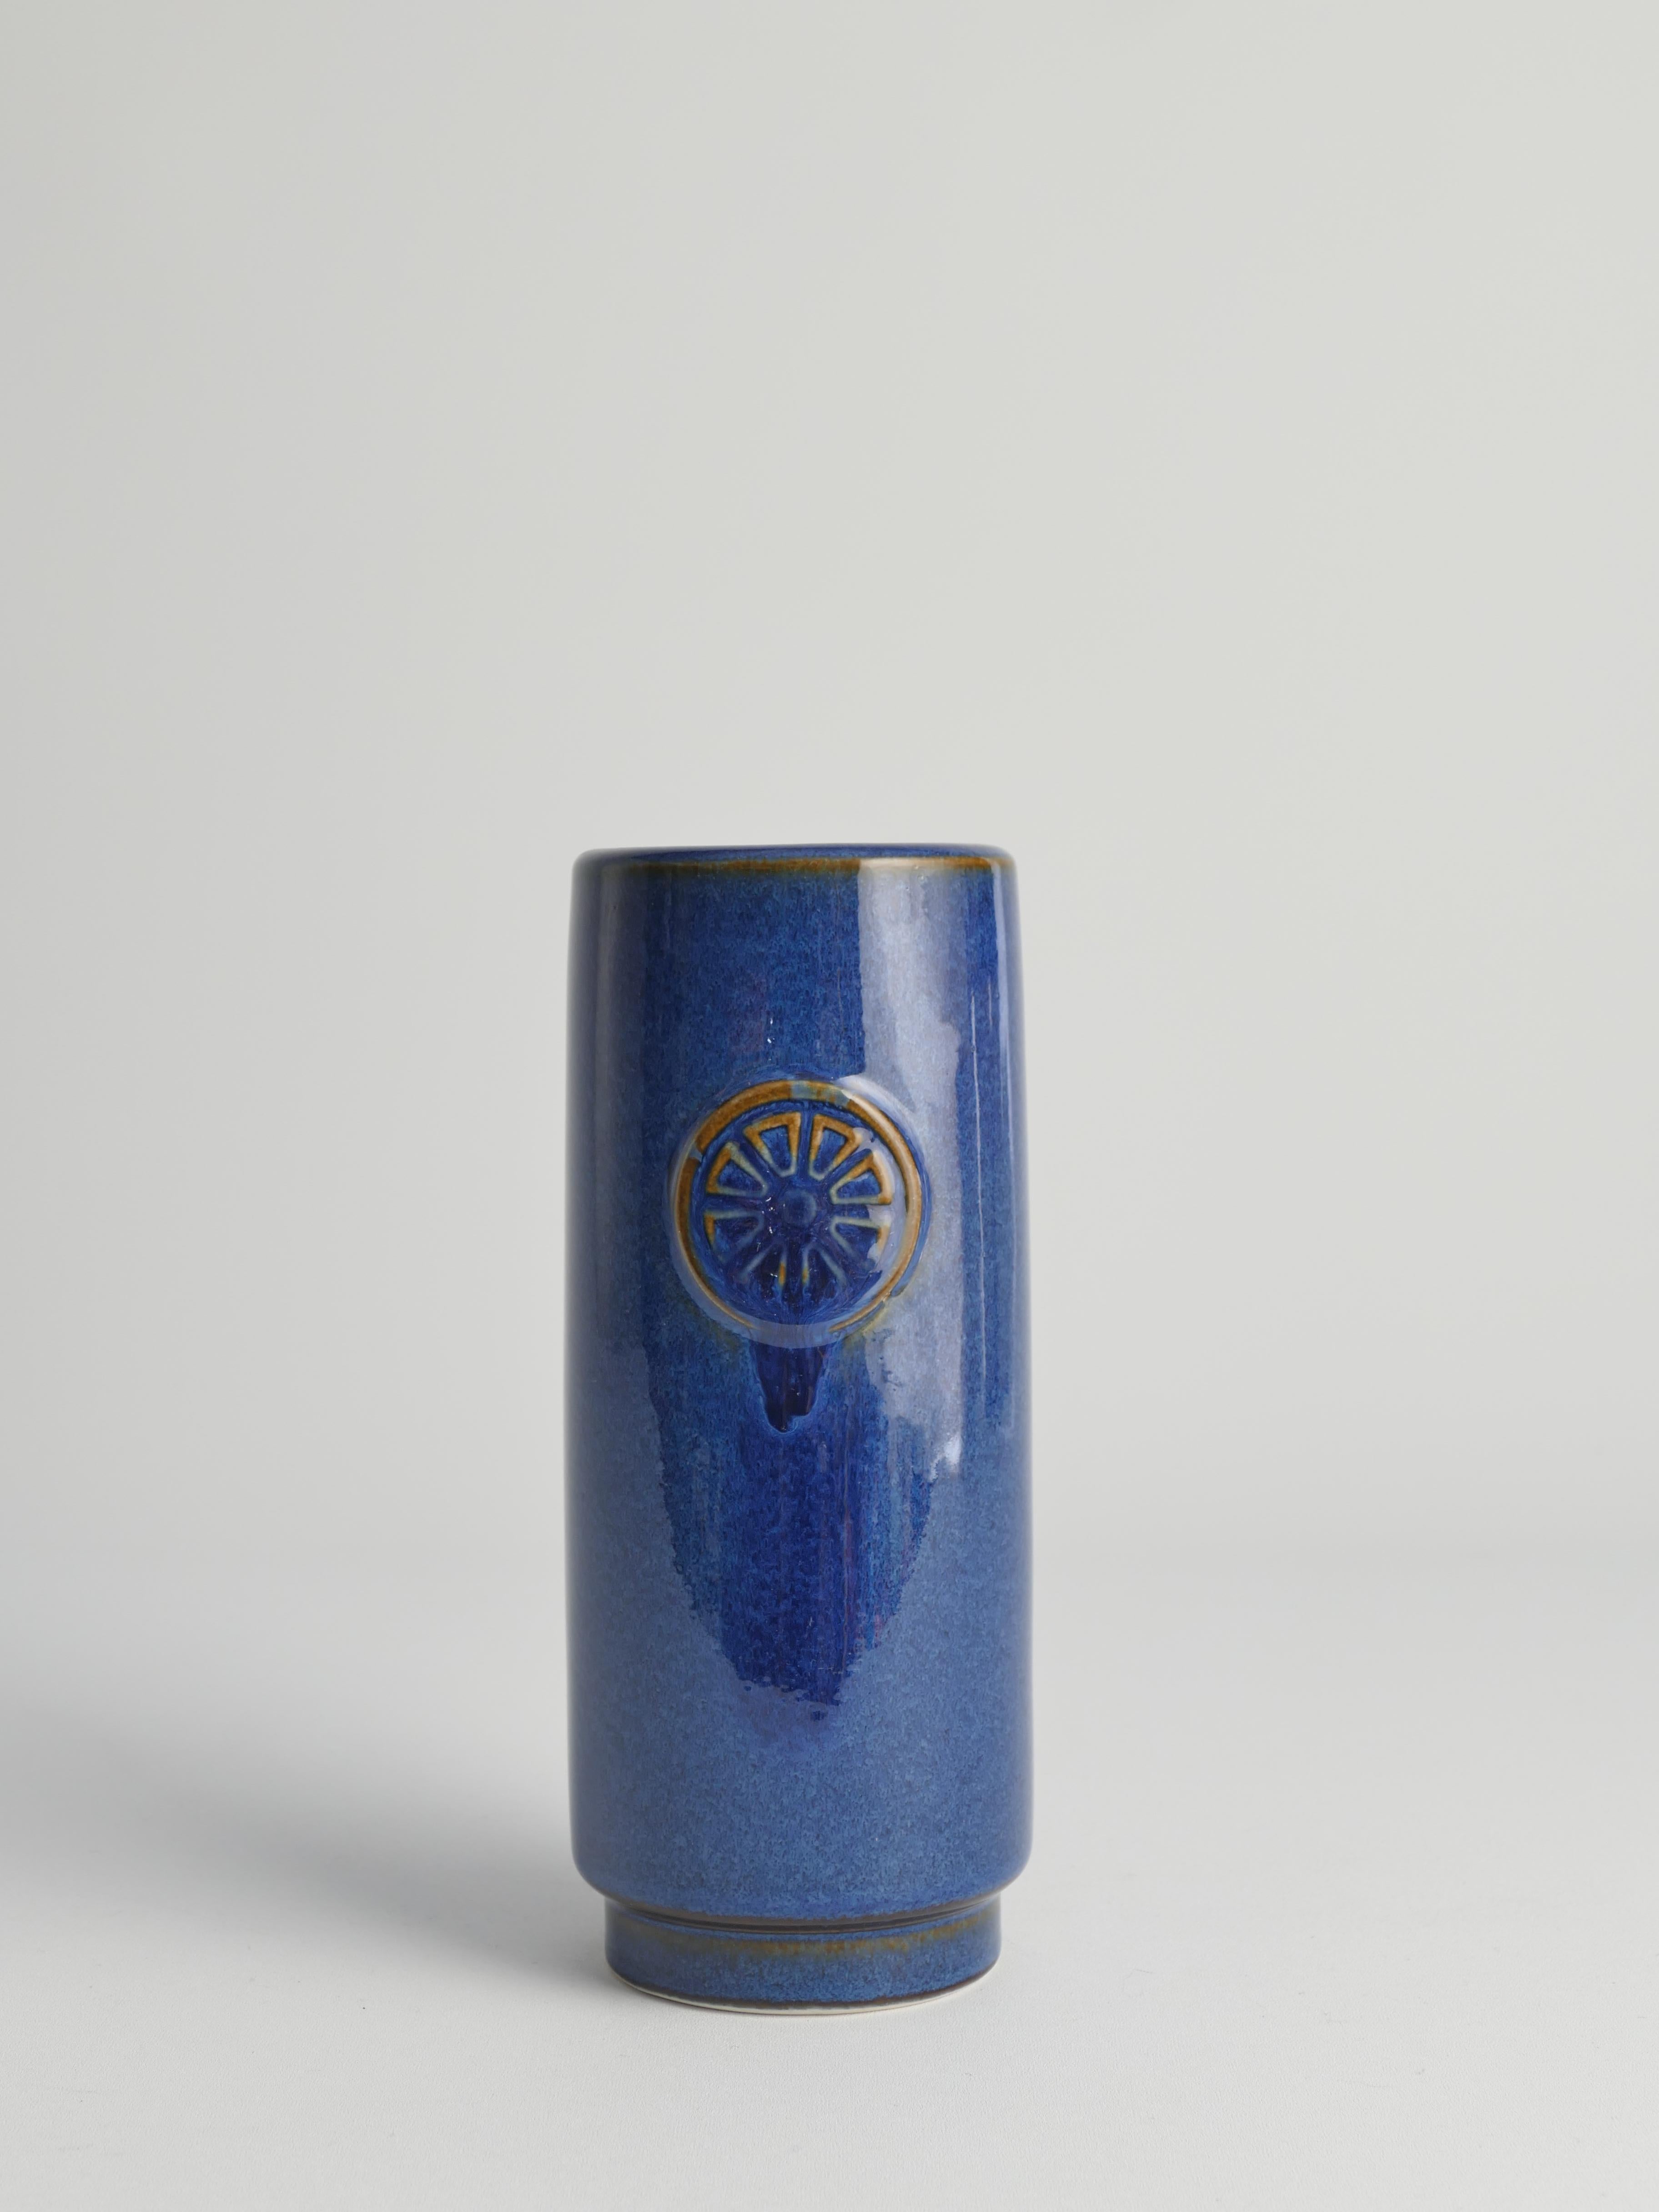 Dies ist eine Vase mit schöner blauer Glasur aus der Serie Nordlys (Nordlicht auf Dänisch), die von Maria Philippi für Søholm Ceramics entworfen wurde. Der Name Nordlicht kommt von der Glasur: Wenn die Lichter auf die glänzende Glasur treffen,